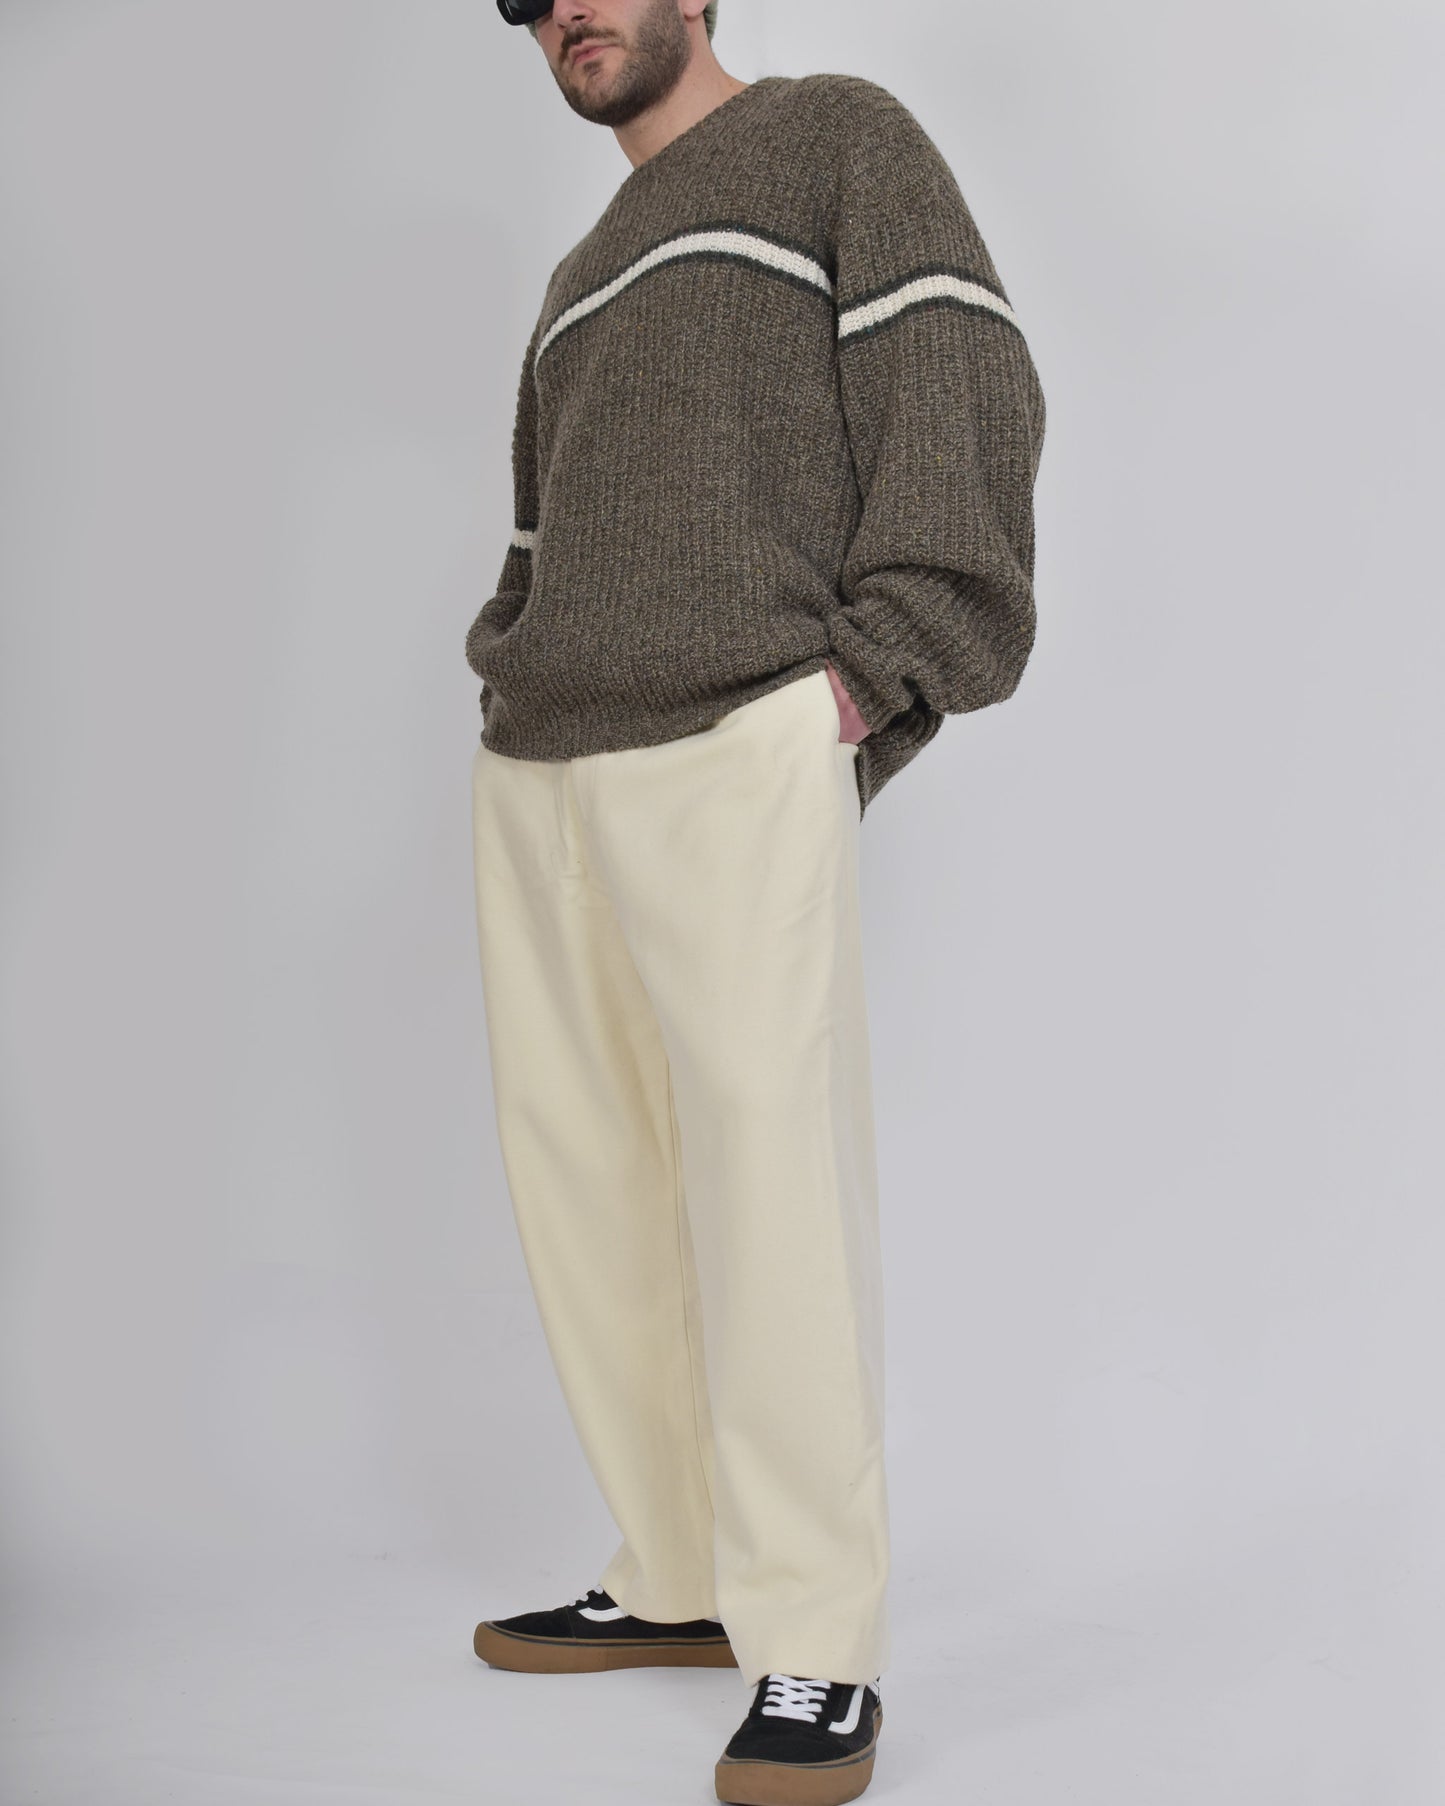 Vivienne Westwood Harris Tweed Trousers Cream 42